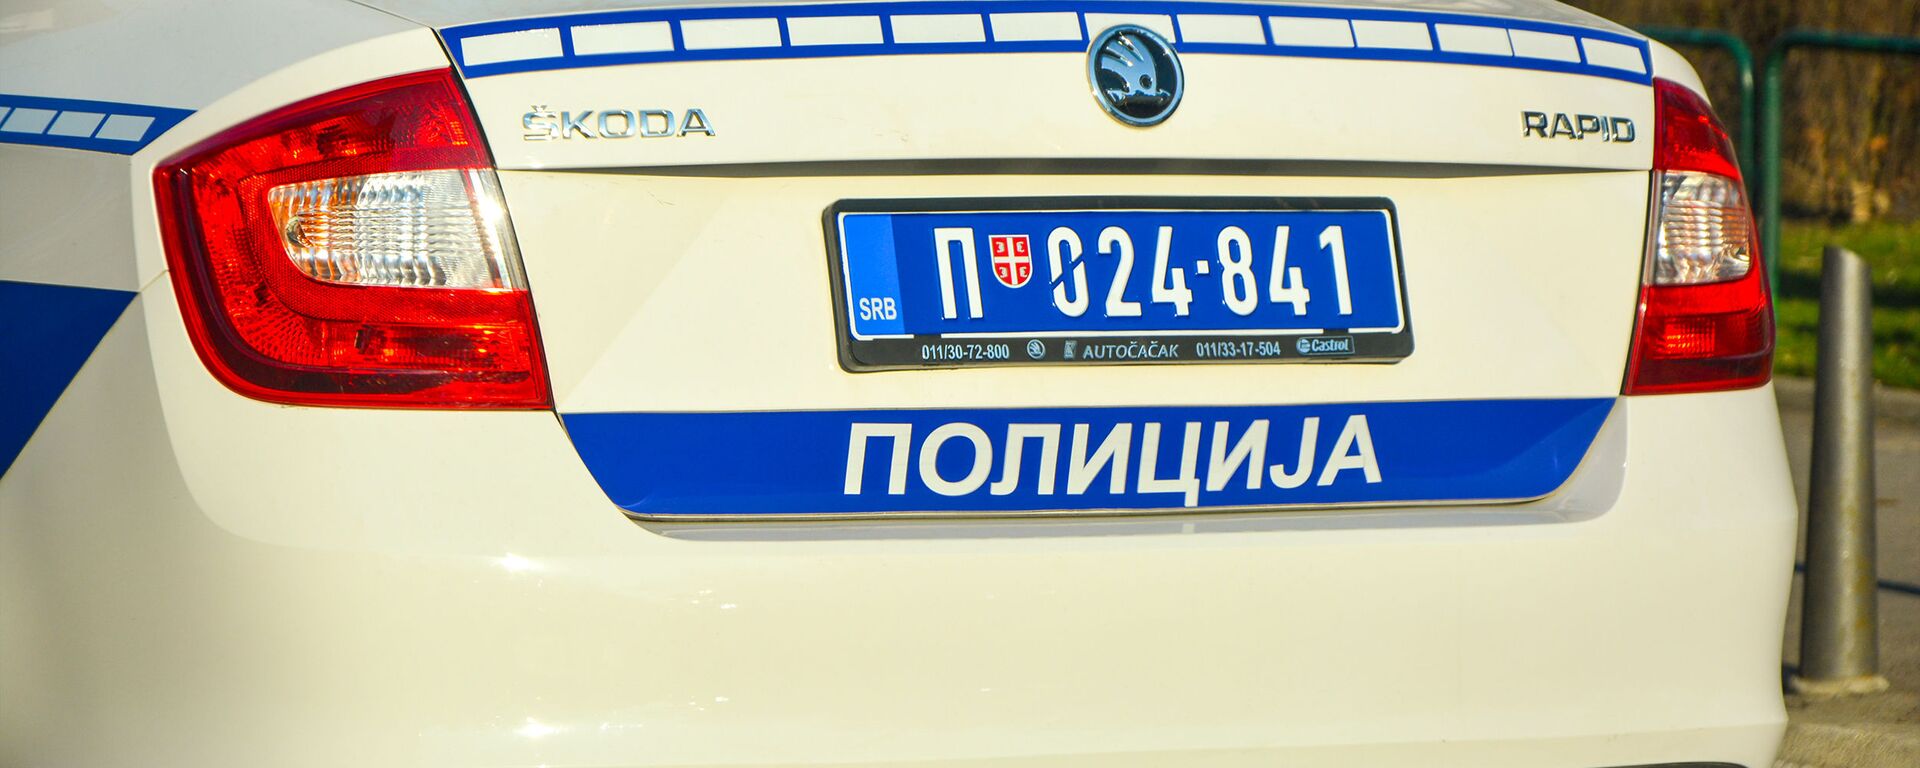 Policijska kola - Sputnik Srbija, 1920, 09.12.2021